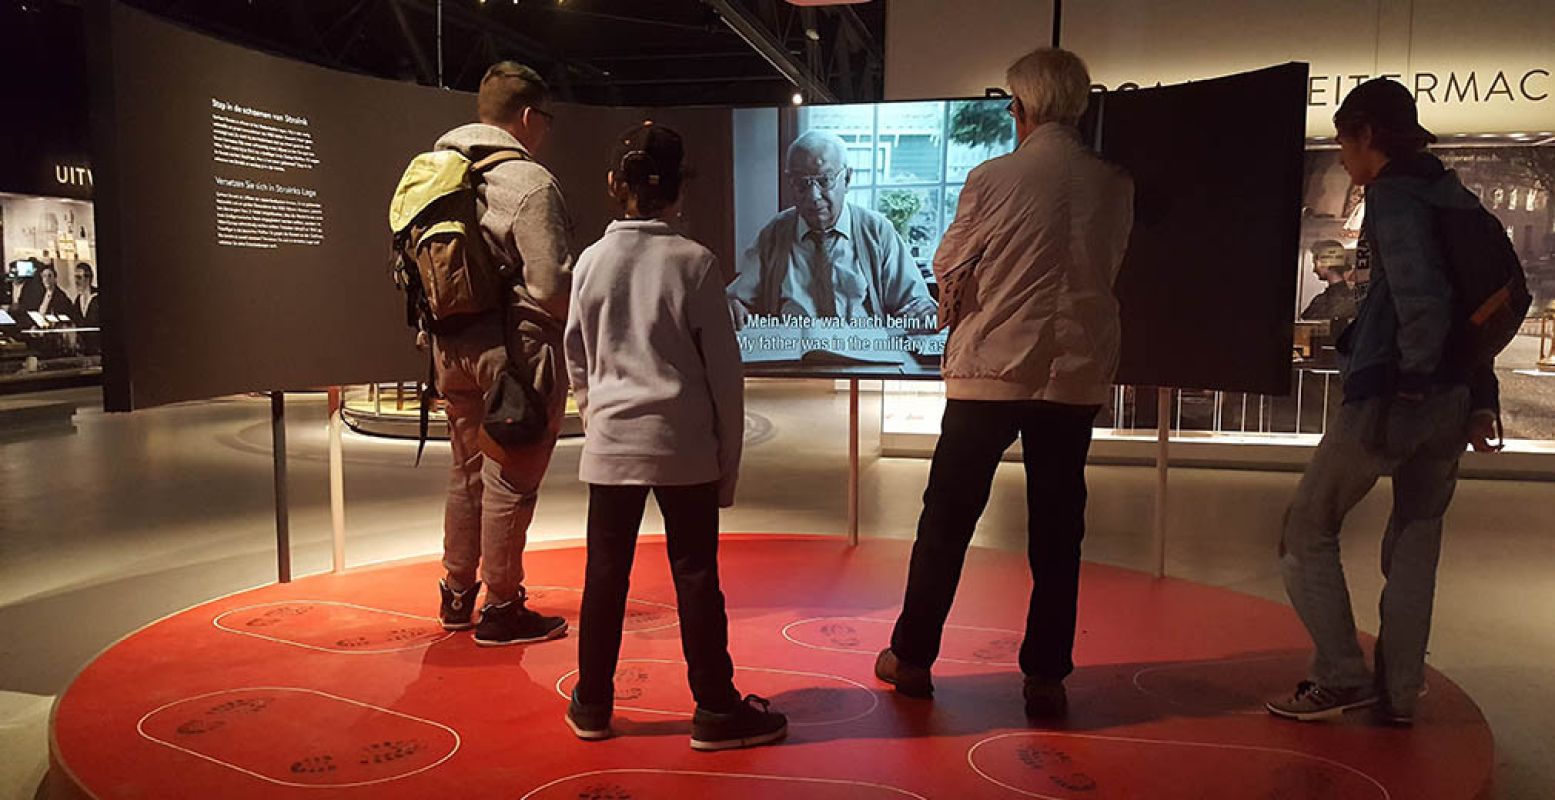 In Oorlogsmuseum Overloon kun je in de interactieve tentoonstelling laten zien welke keuzes jij in oorlogstijd zou maken. Foto: Oorlogsmuseum Overloon